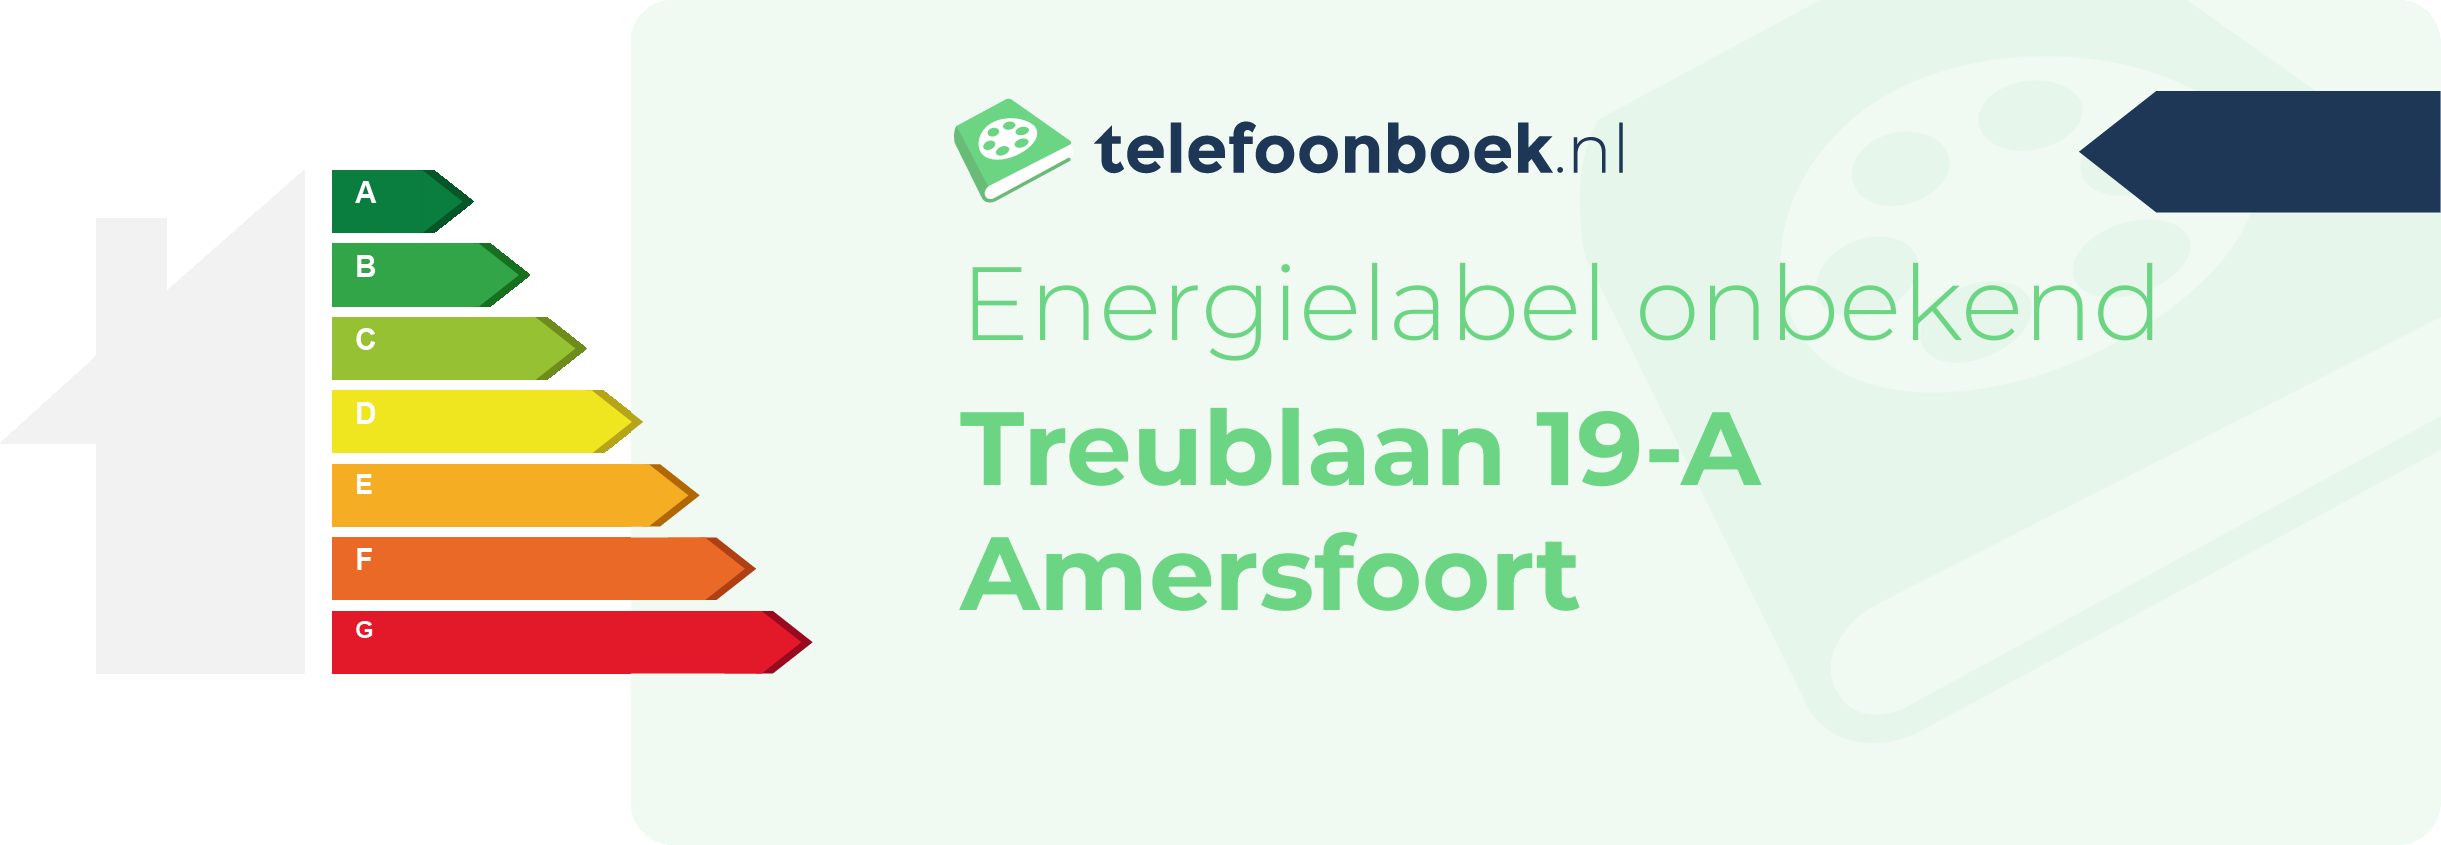 Energielabel Treublaan 19-A Amersfoort